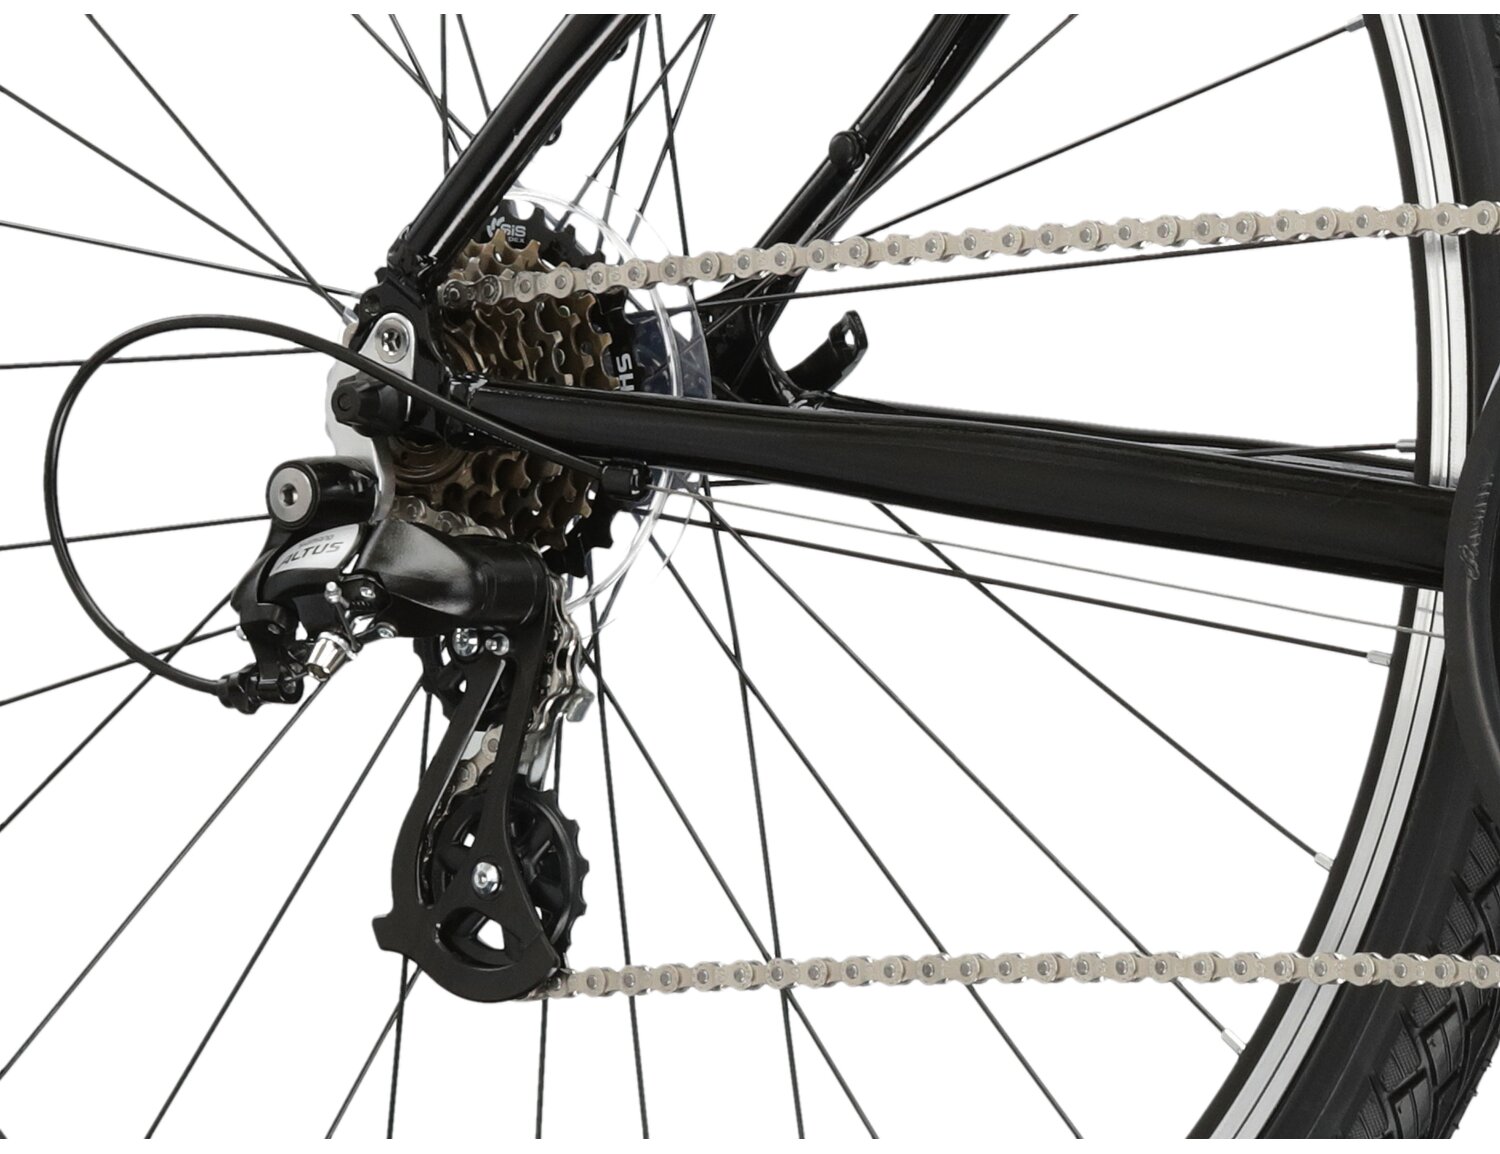  Tylna siedmiobiegowa przerzutka Shimano Altus M310 oraz hamulce v-brake w rowerze crossowym KROSS Evado 2.0 